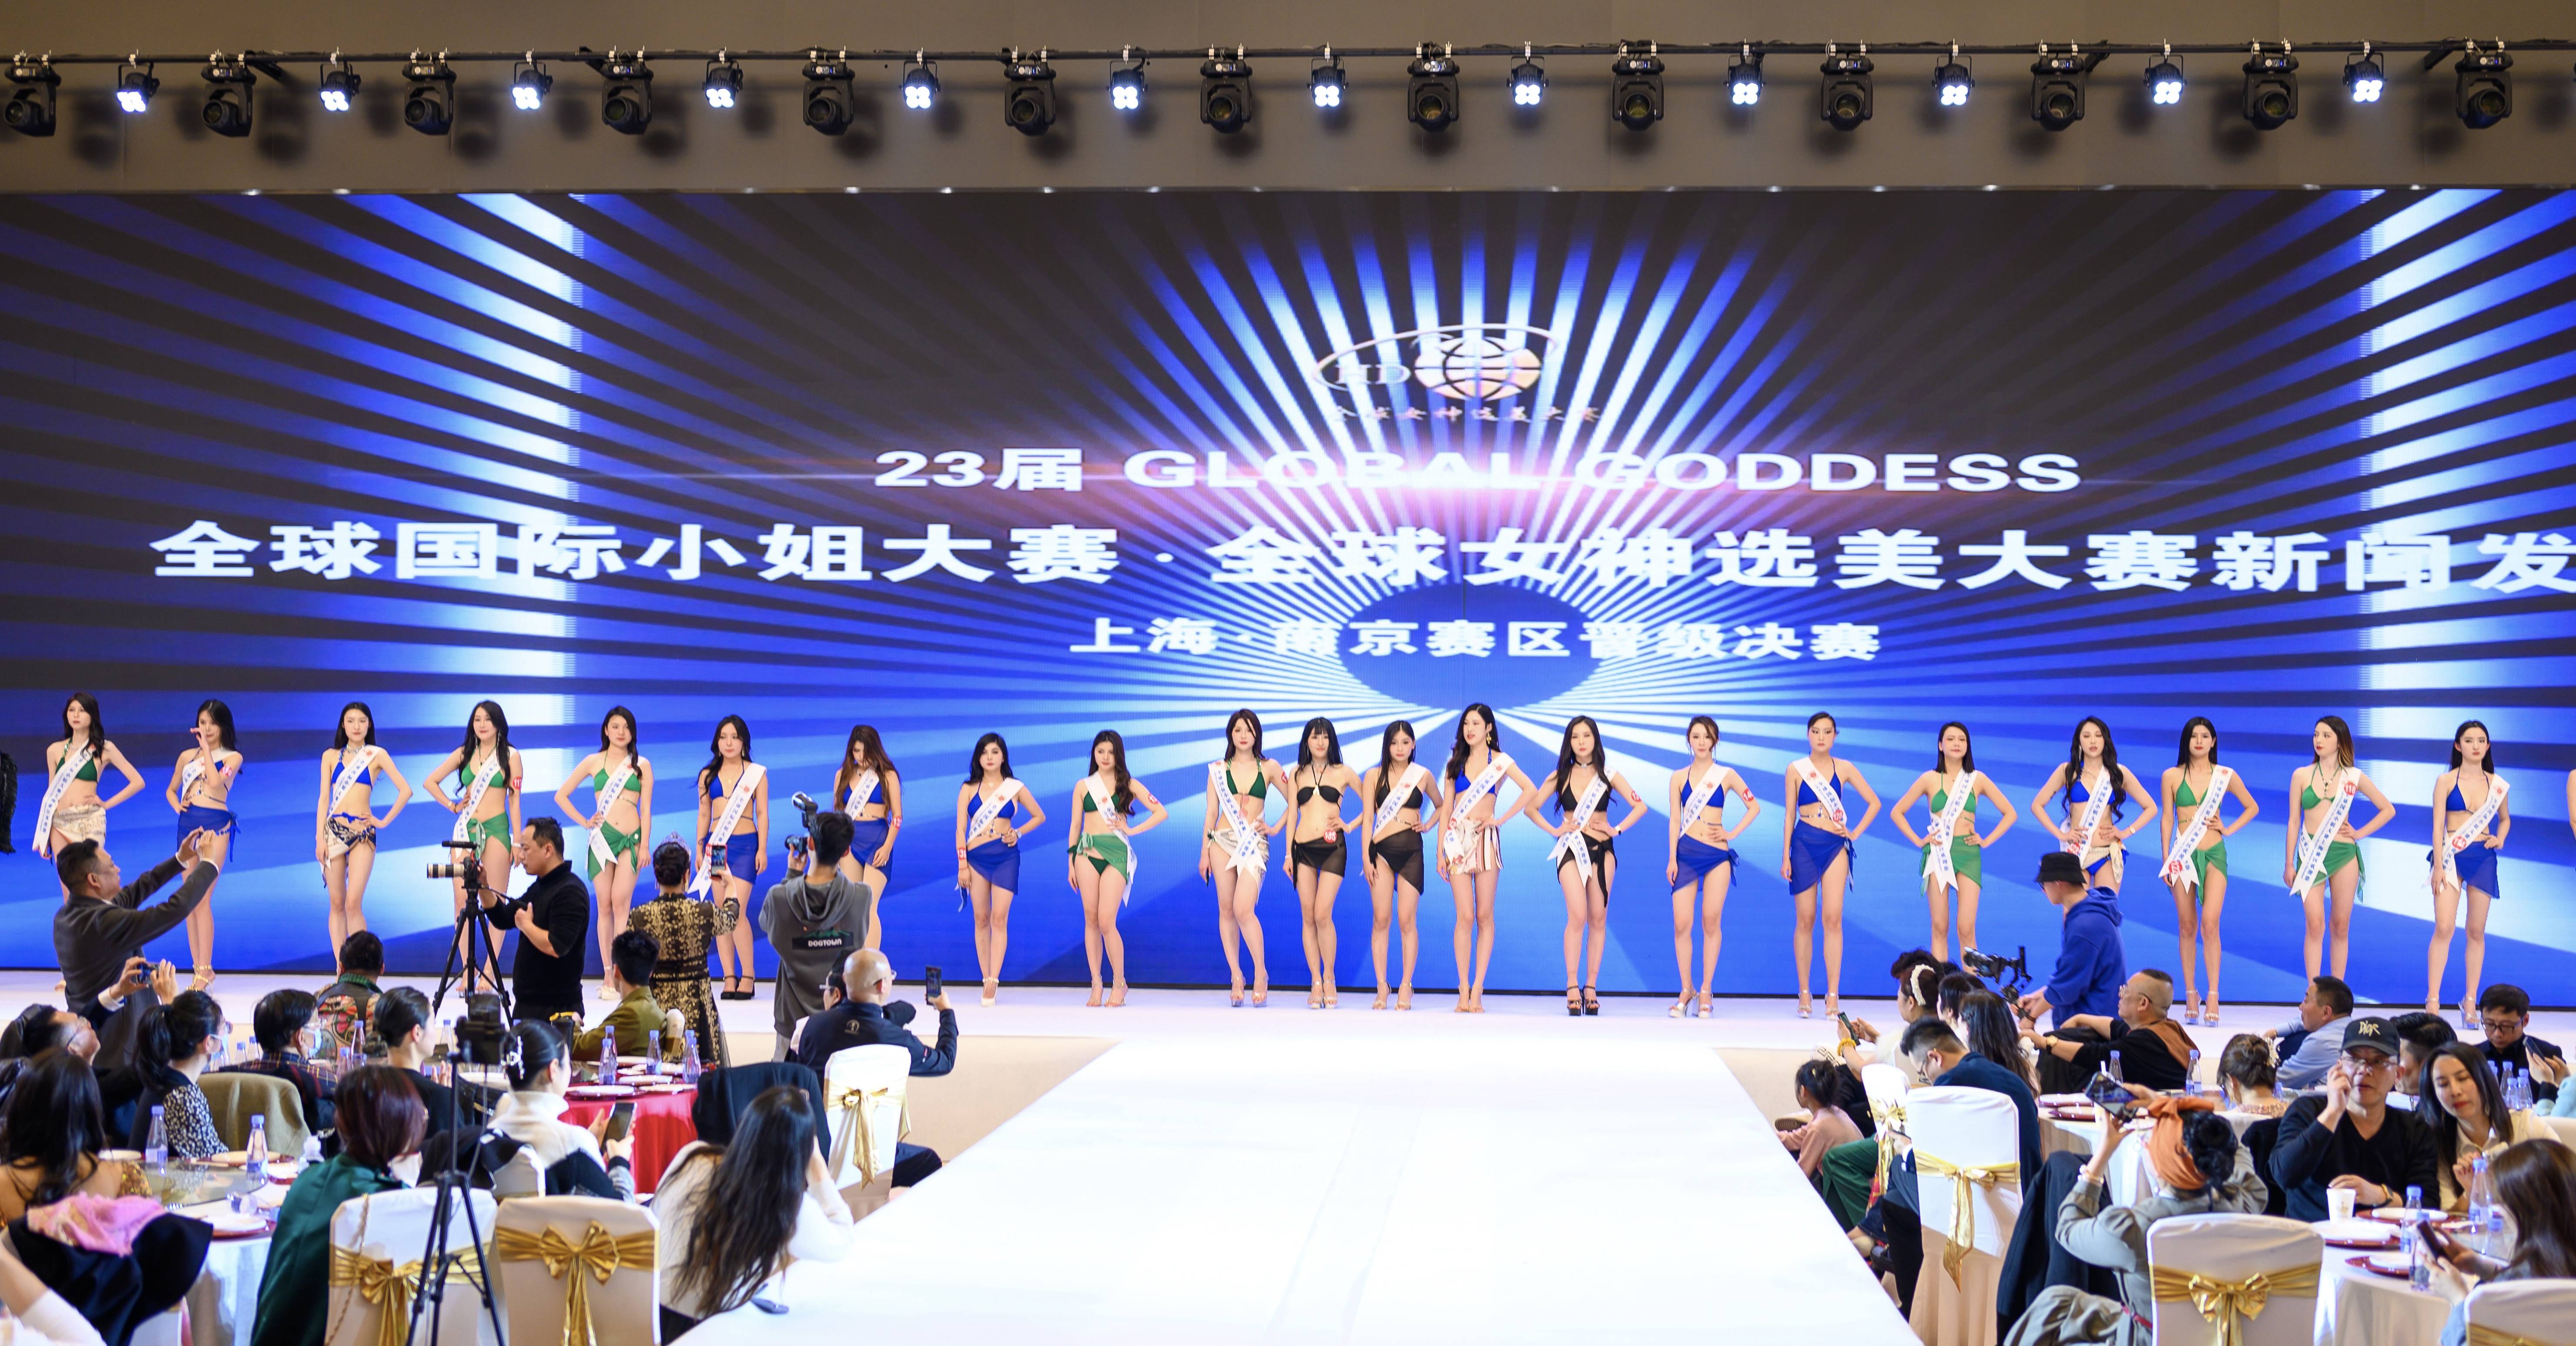 23届全球国际小姐大赛新闻发布会·上海,南京赛区晋级决赛在上海盛大